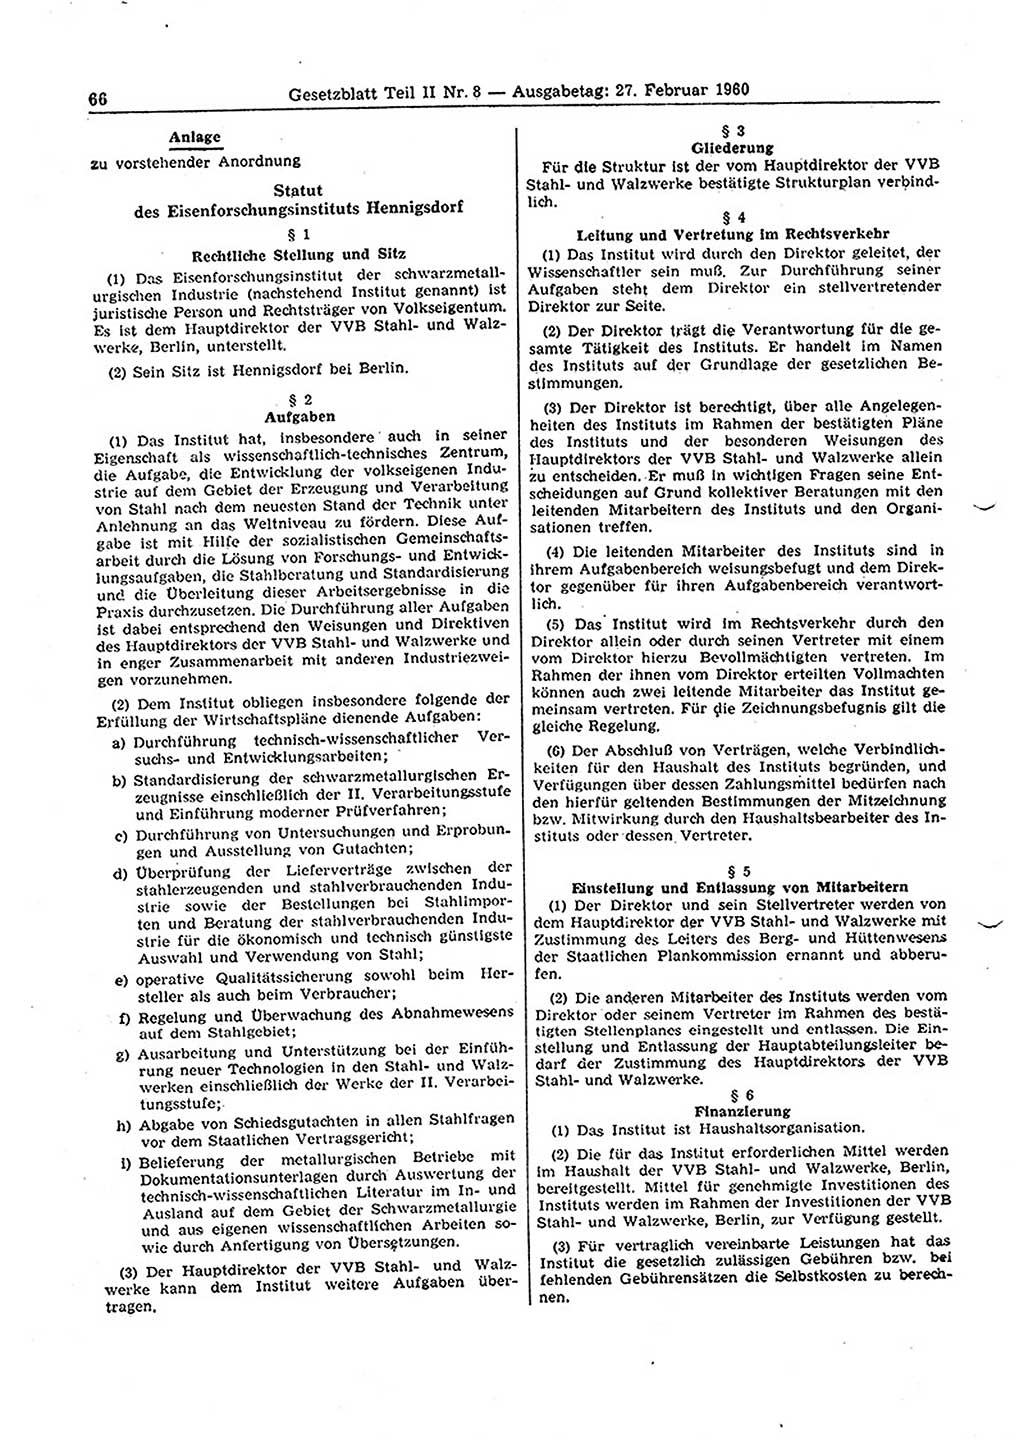 Gesetzblatt (GBl.) der Deutschen Demokratischen Republik (DDR) Teil ⅠⅠ 1960, Seite 66 (GBl. DDR ⅠⅠ 1960, S. 66)